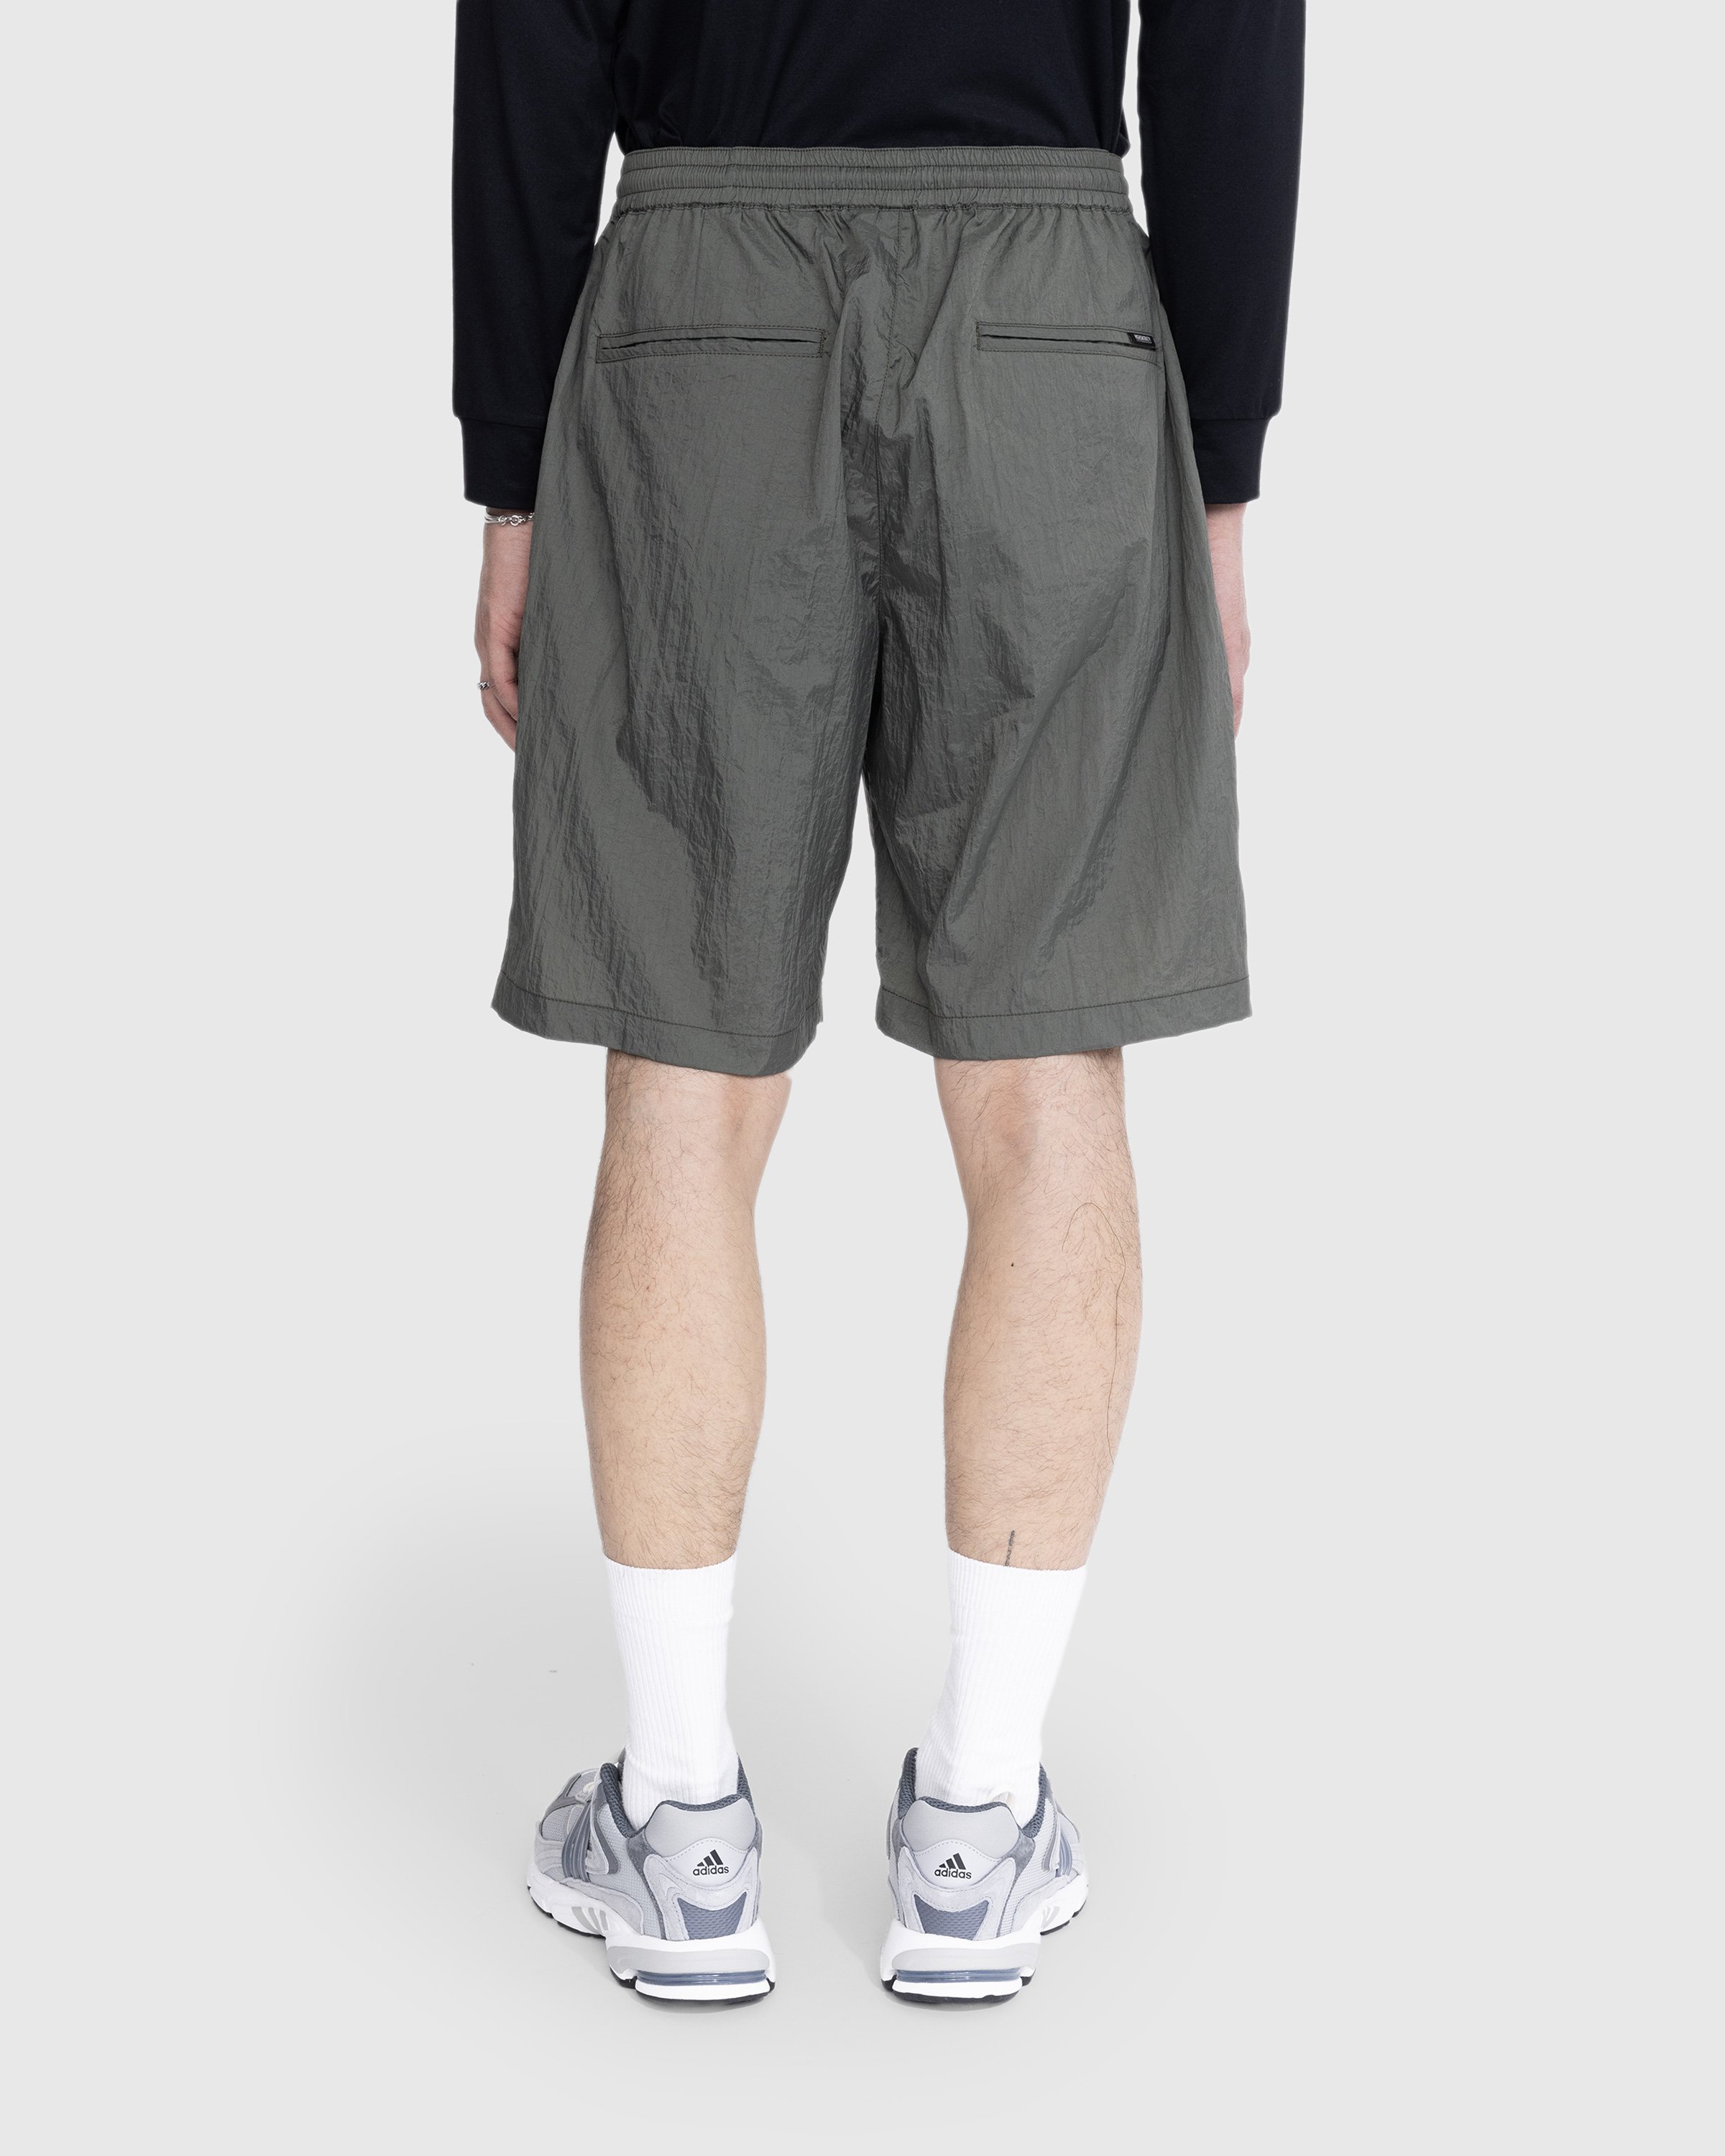 Highsnobiety - Texture Nylon Mid Length Elastic Shorts Grey - Clothing - Grey - Image 3